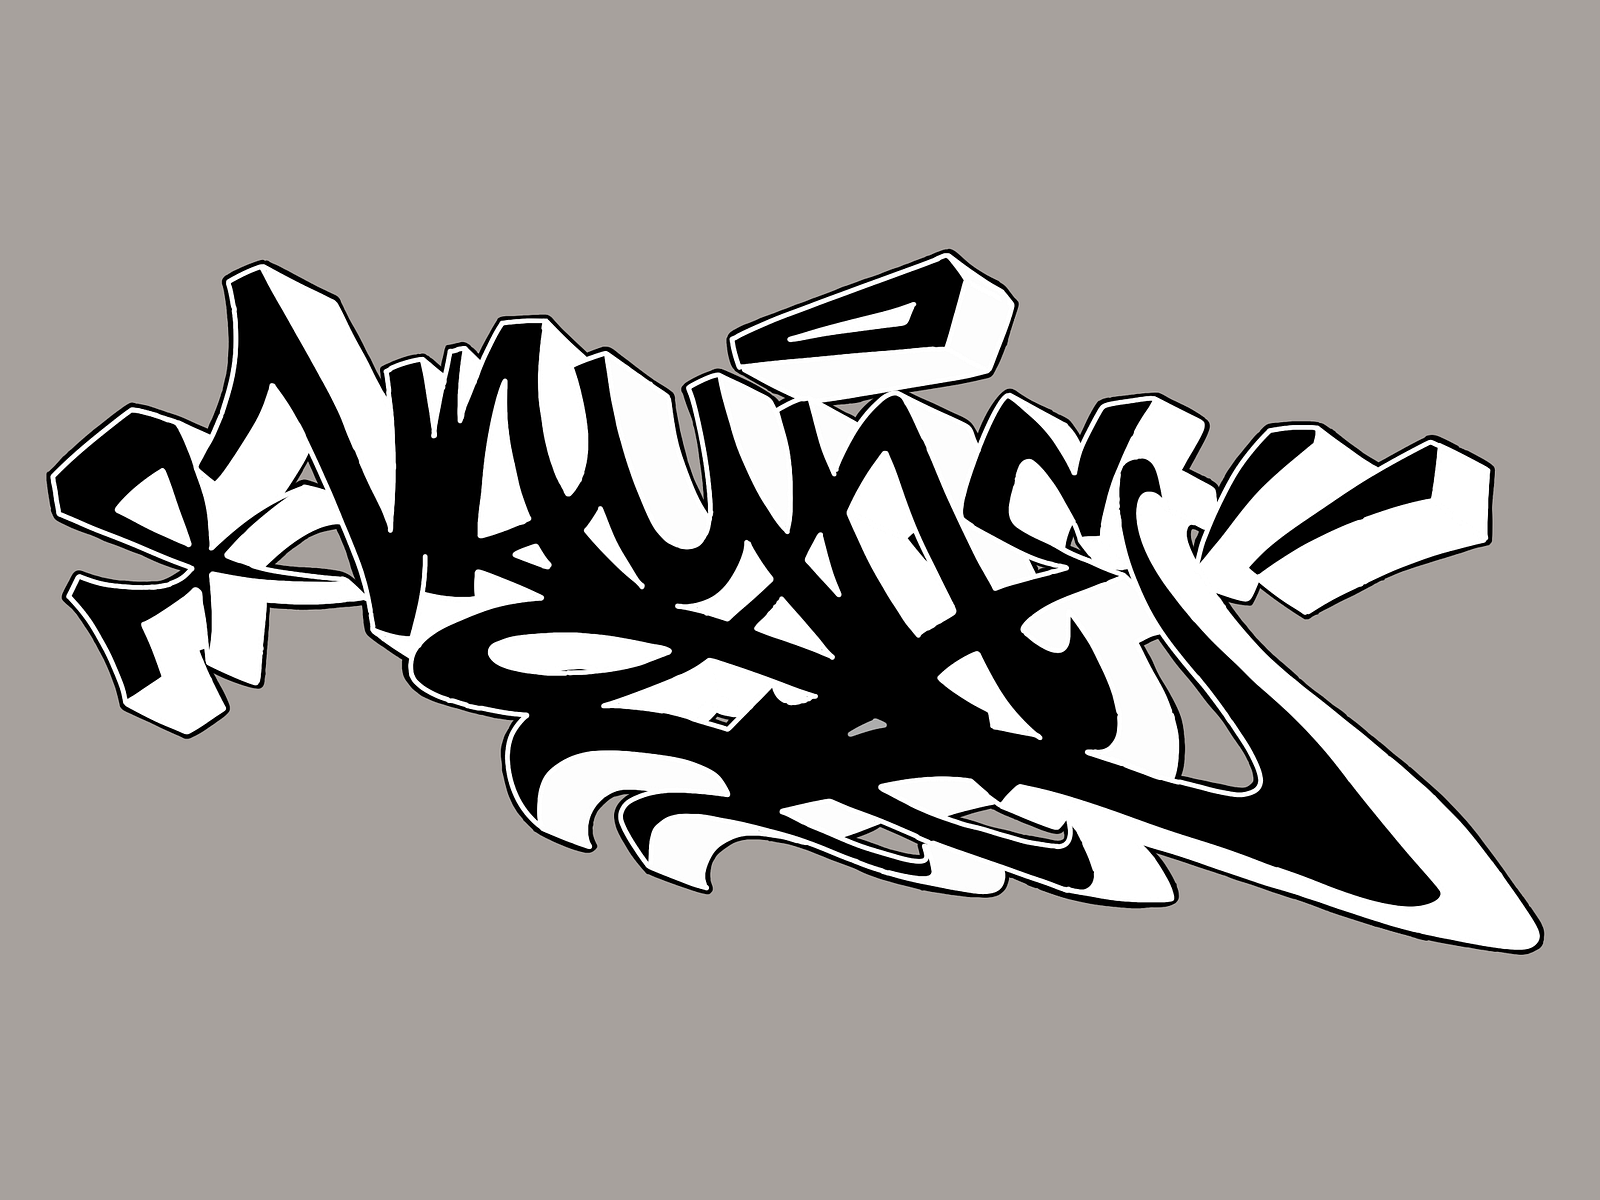 Vayne graffiti - Straight letter by Mopar on Dribbble